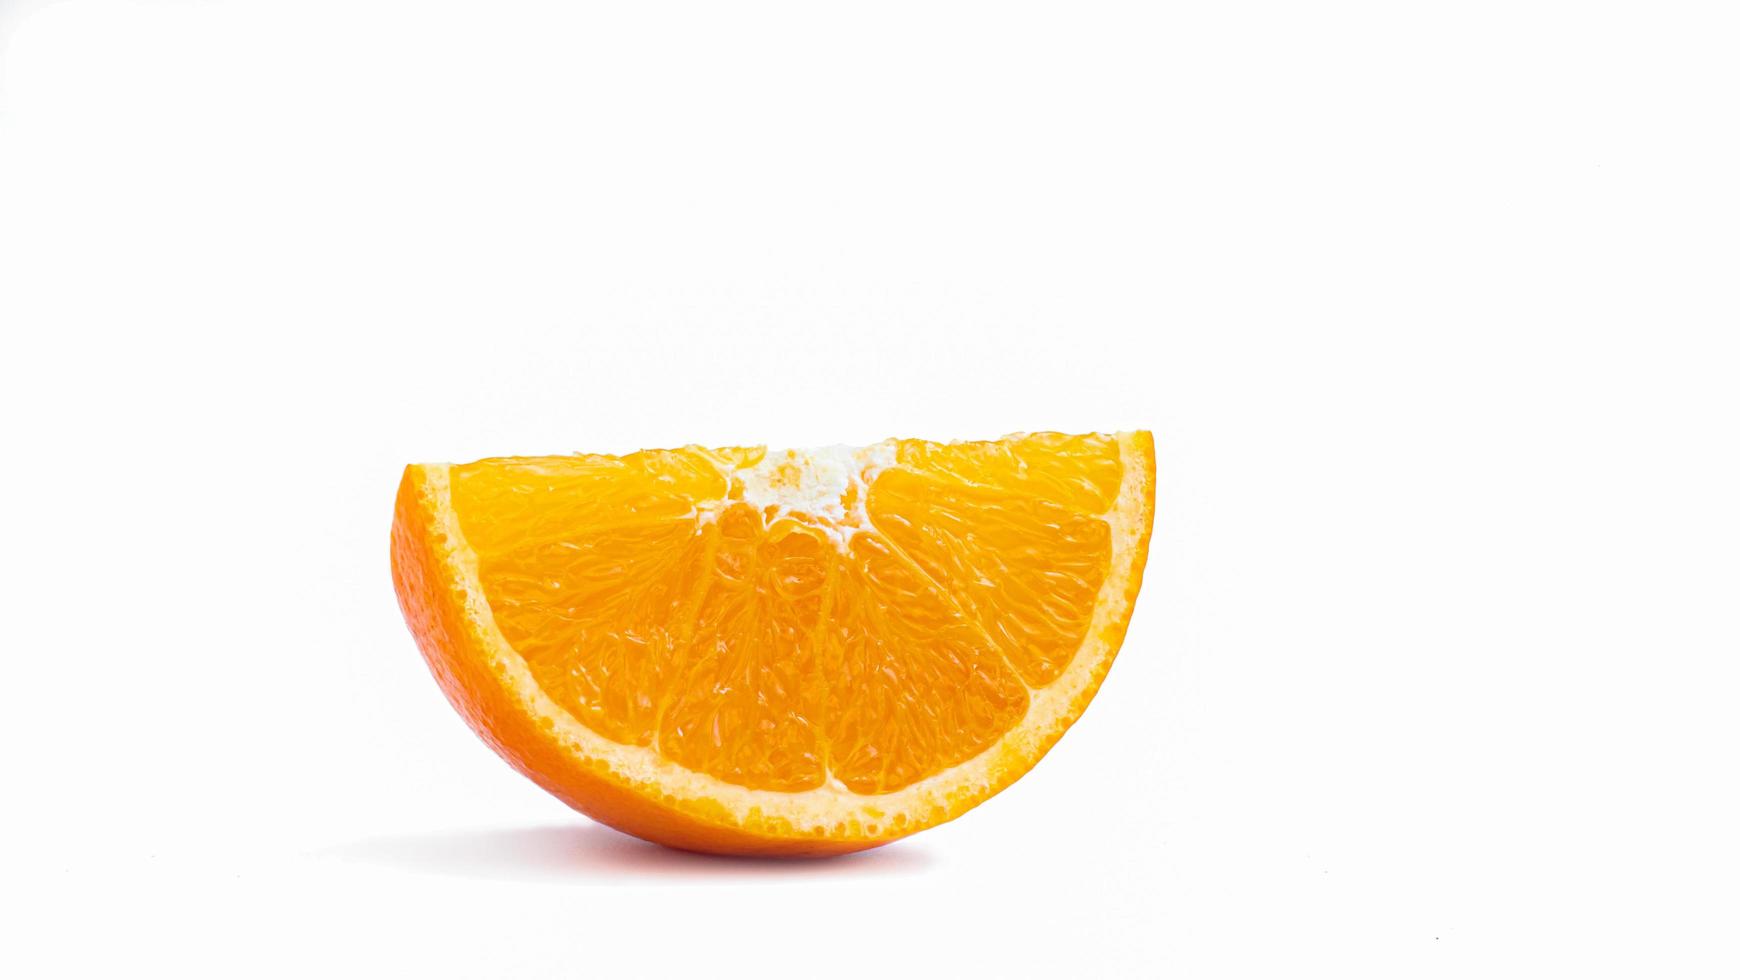 corte por la mitad y corte una fruta naranja madura con cáscara de color amarillo dorado. aislado sobre fondo blanco con sombra. foto